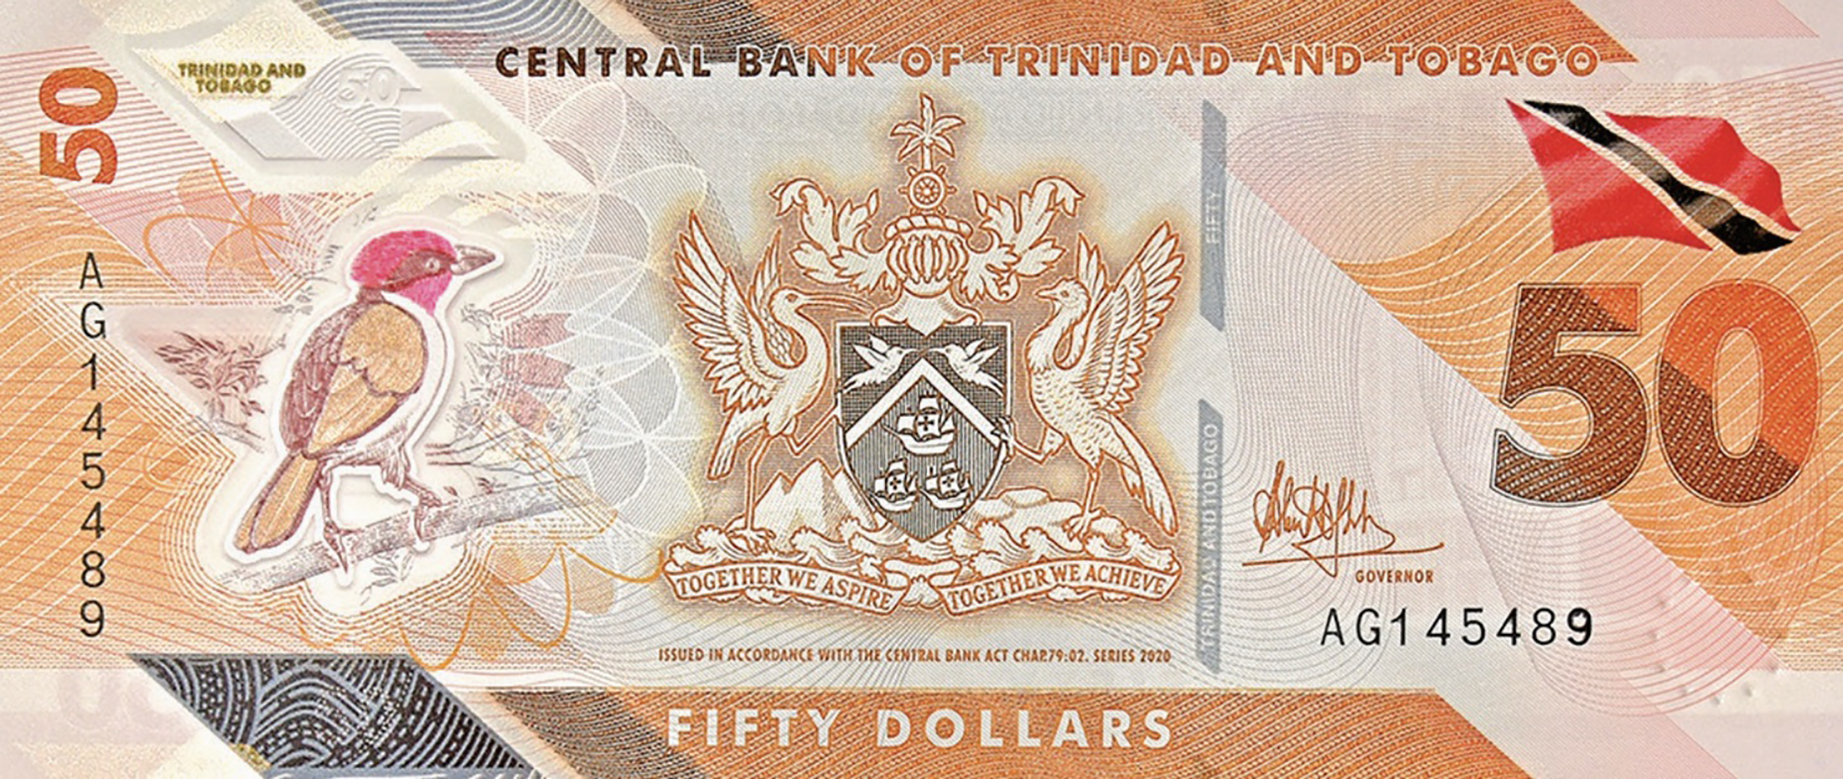 New 50 dollar bill trinidad 238876New 50 dollar bill trinidad 2021